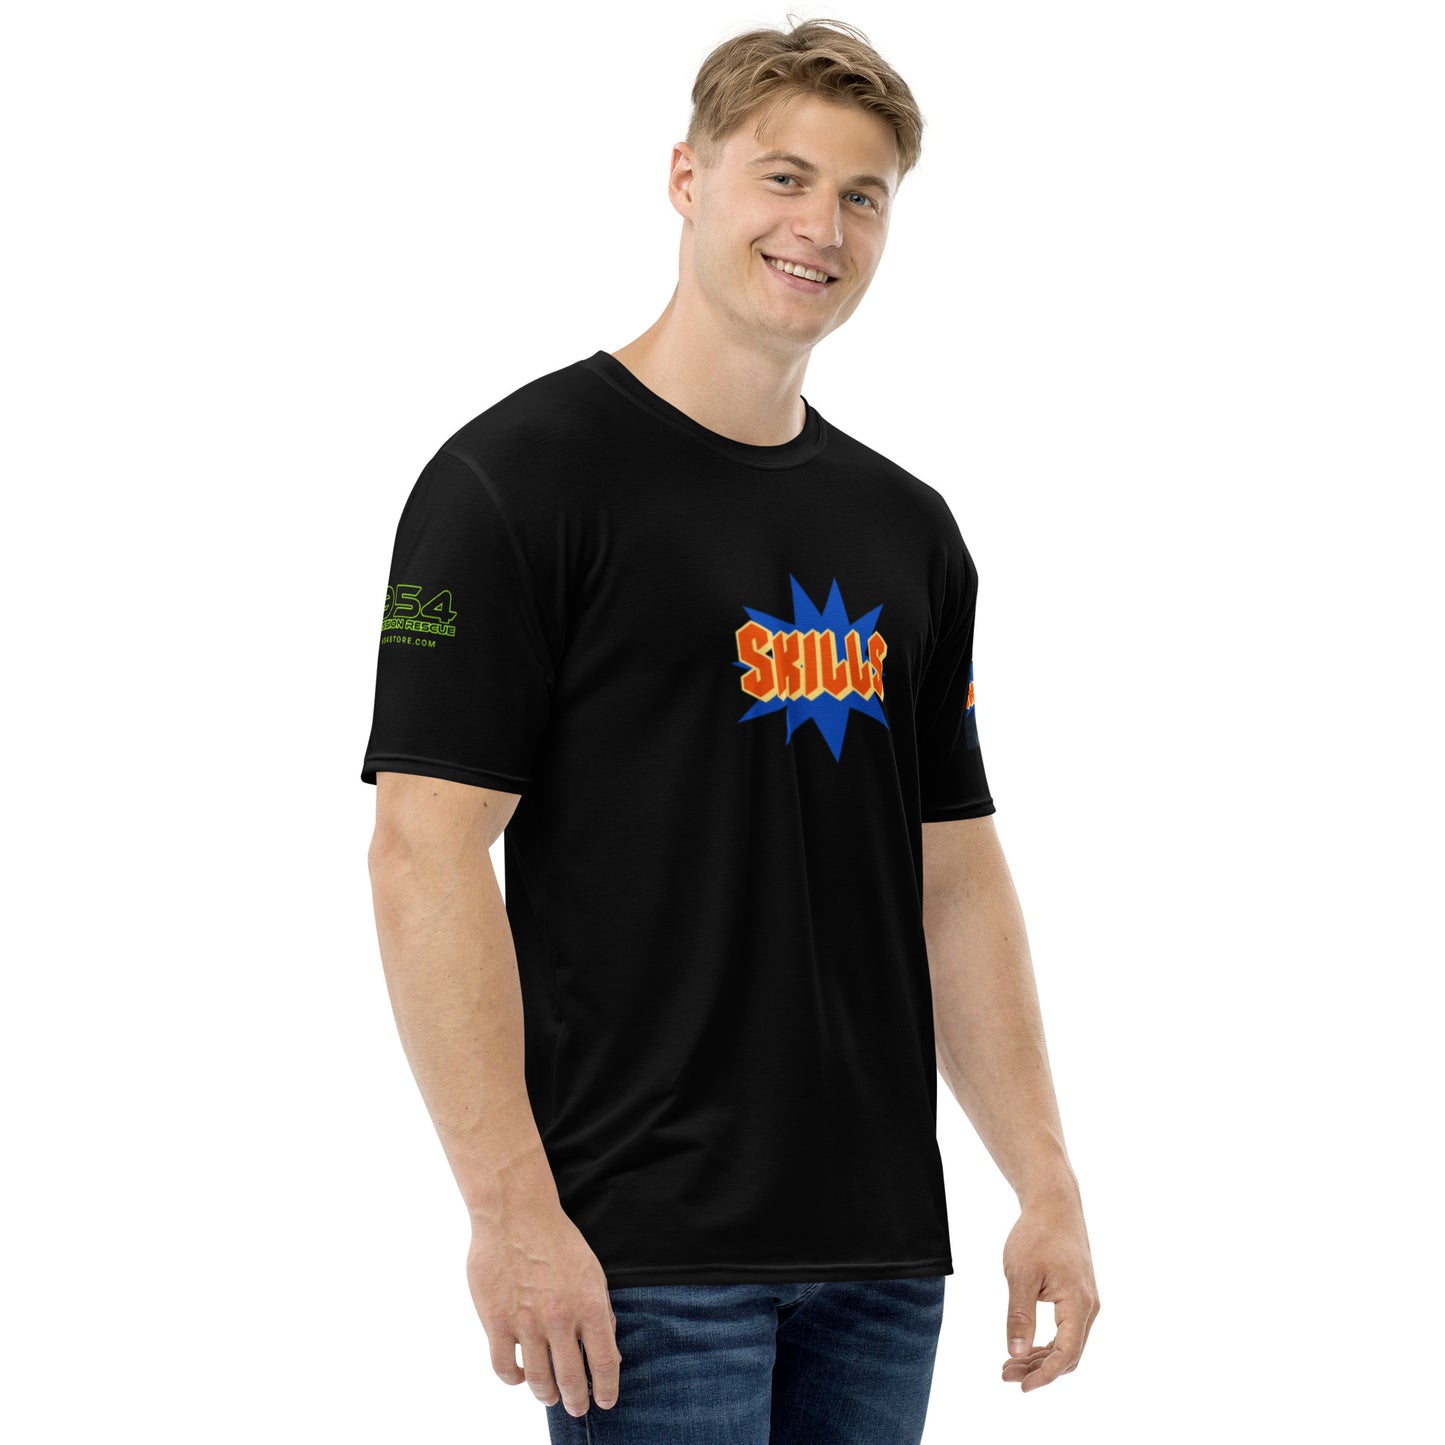 SKILLS Gymnastics 954 Signature Men's t-shirt